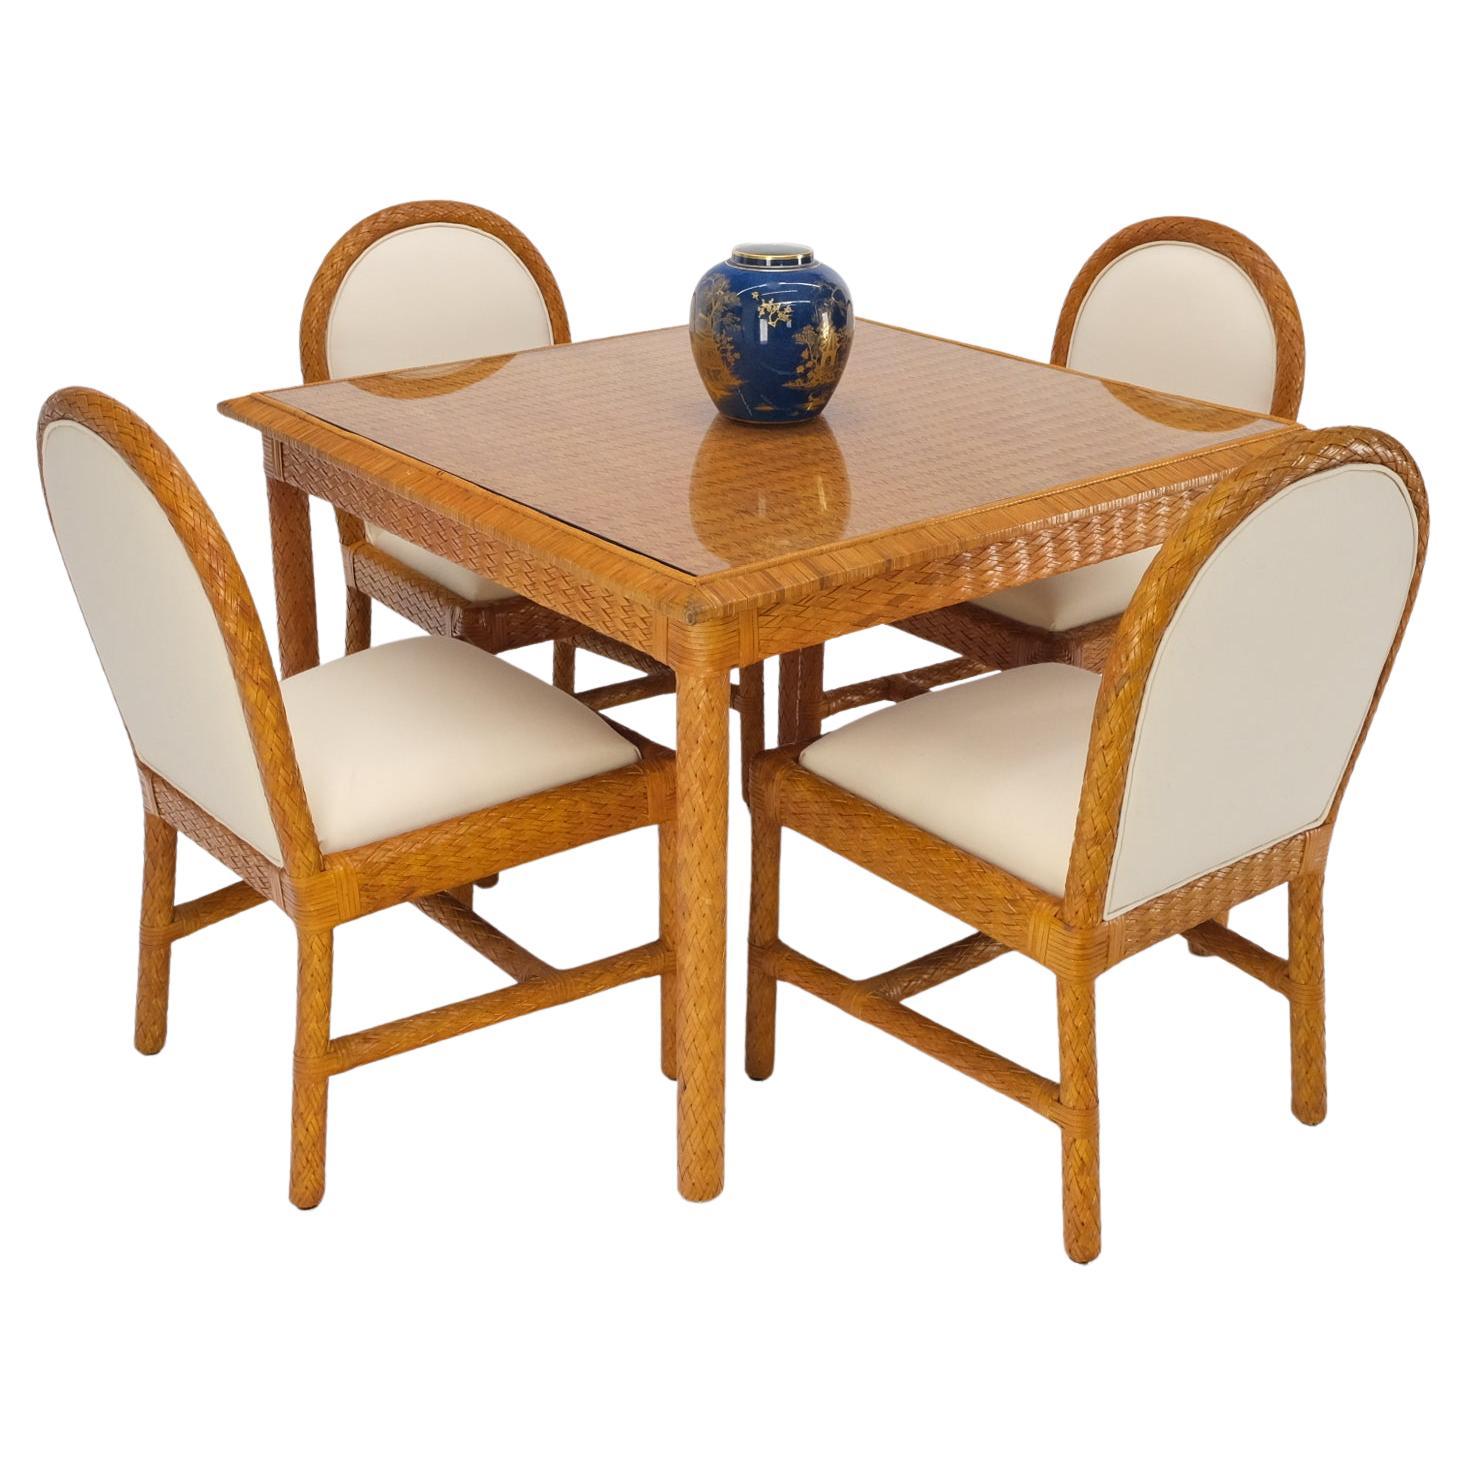 Table de salle à manger carrée en cuir tressé et osier, 4 chaises, plateau en verre.
Garniture en laine beige entièrement neuve. 
La table mesure 42 x 42 x 30 